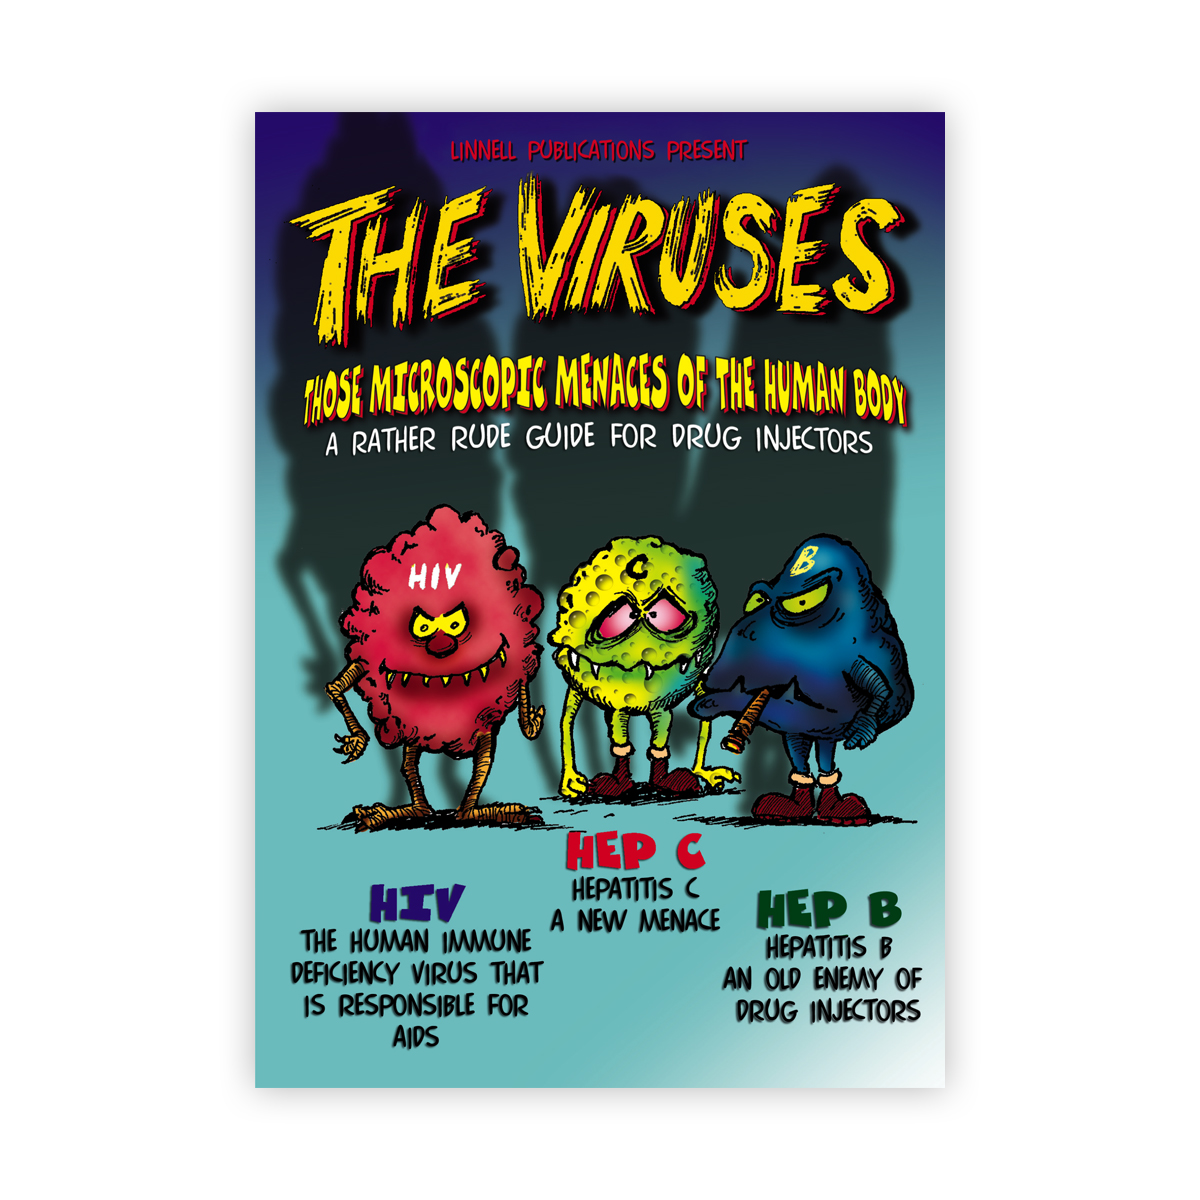 The viruses